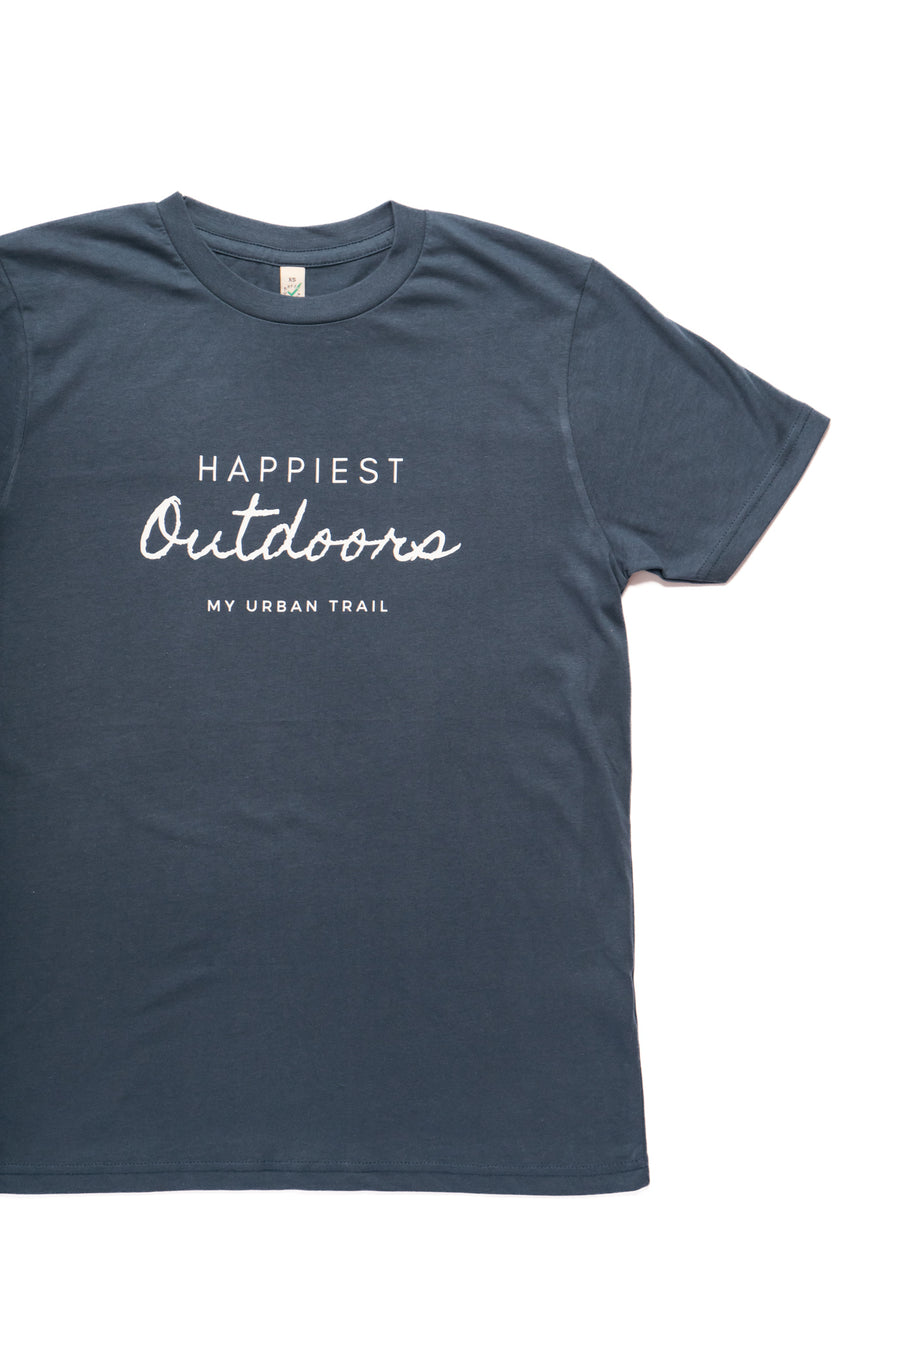 HAPPIEST OUTDOORS Denim Blue Slogan Classic T-shirt – My Urban Trail